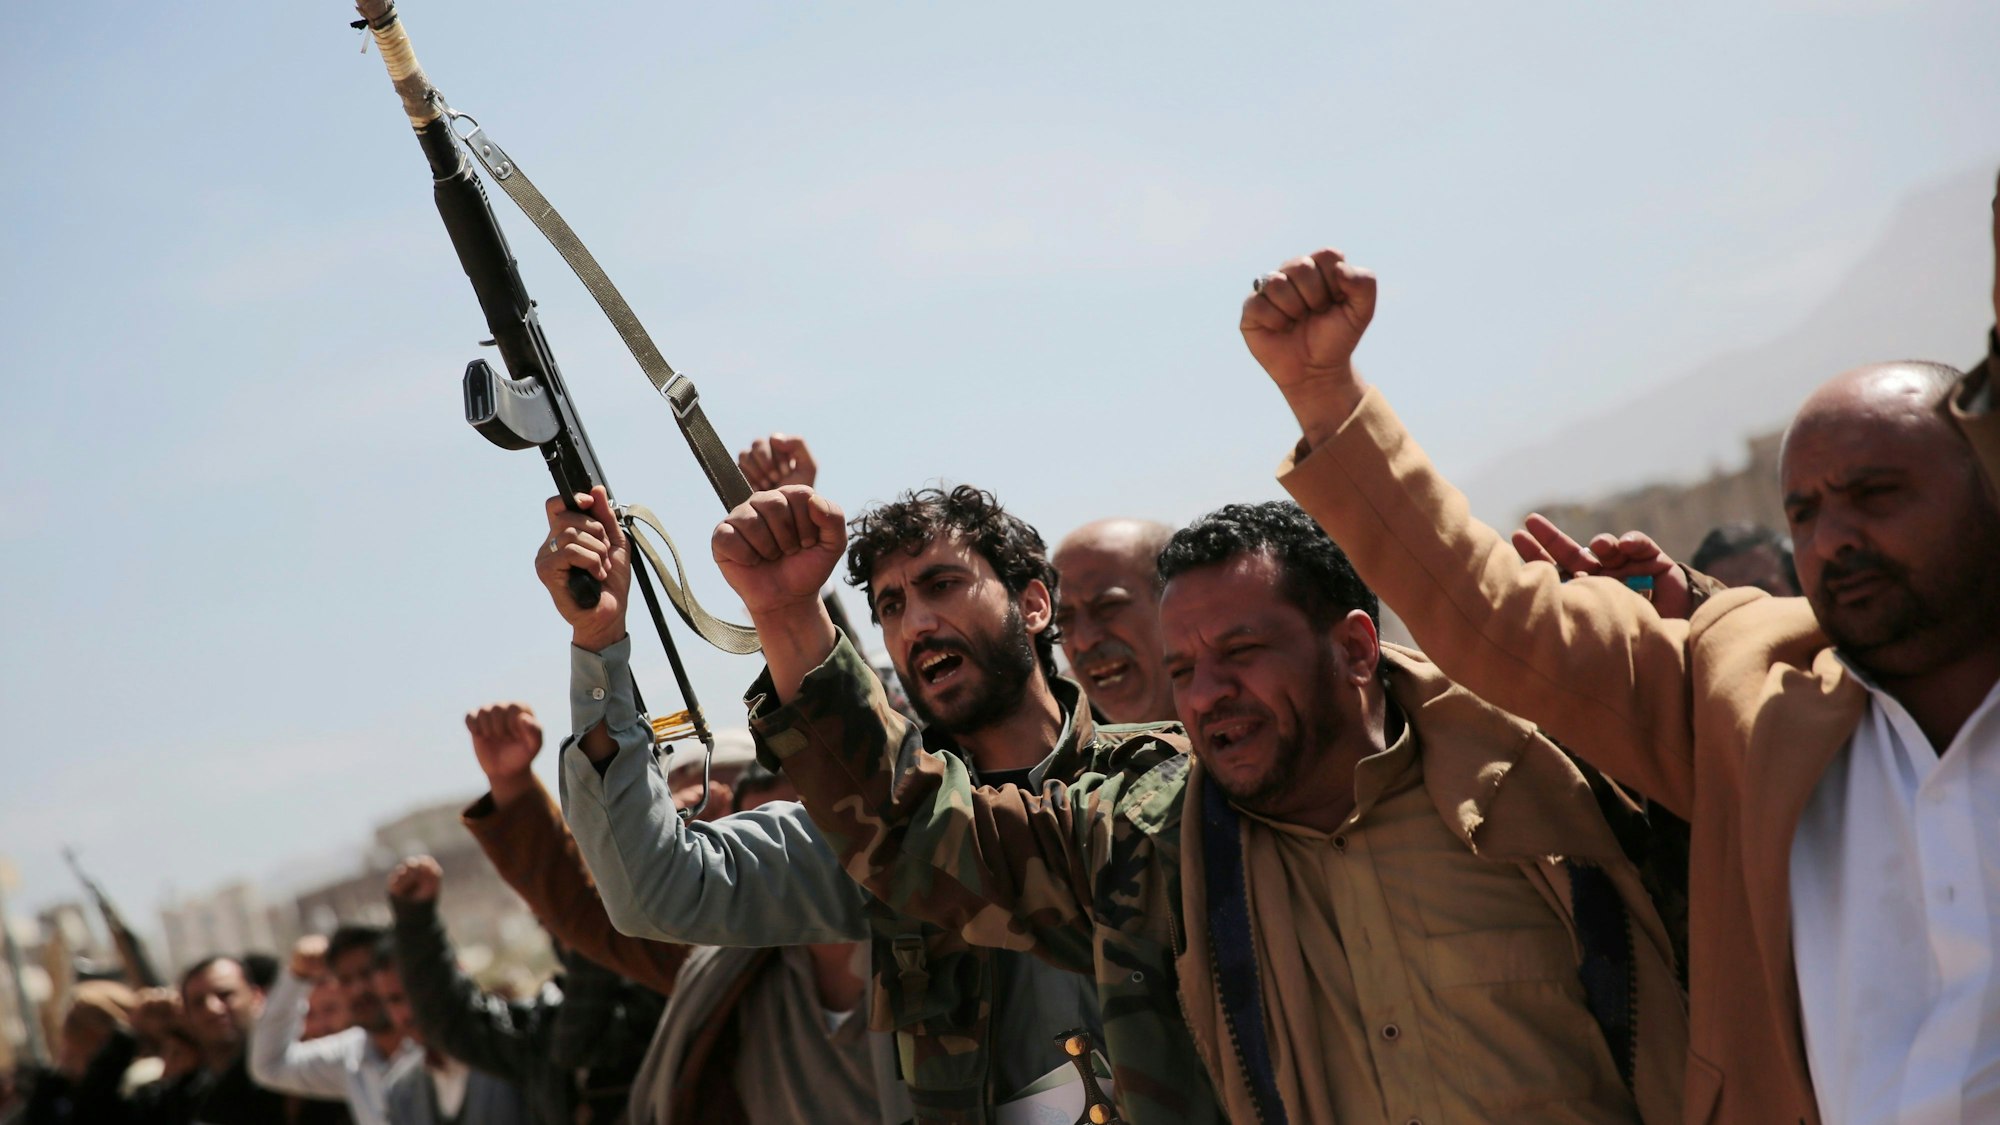 Bewaffnete Huthi-Kämpfer nehmen an einem Trauerzug für Rebellen teil.